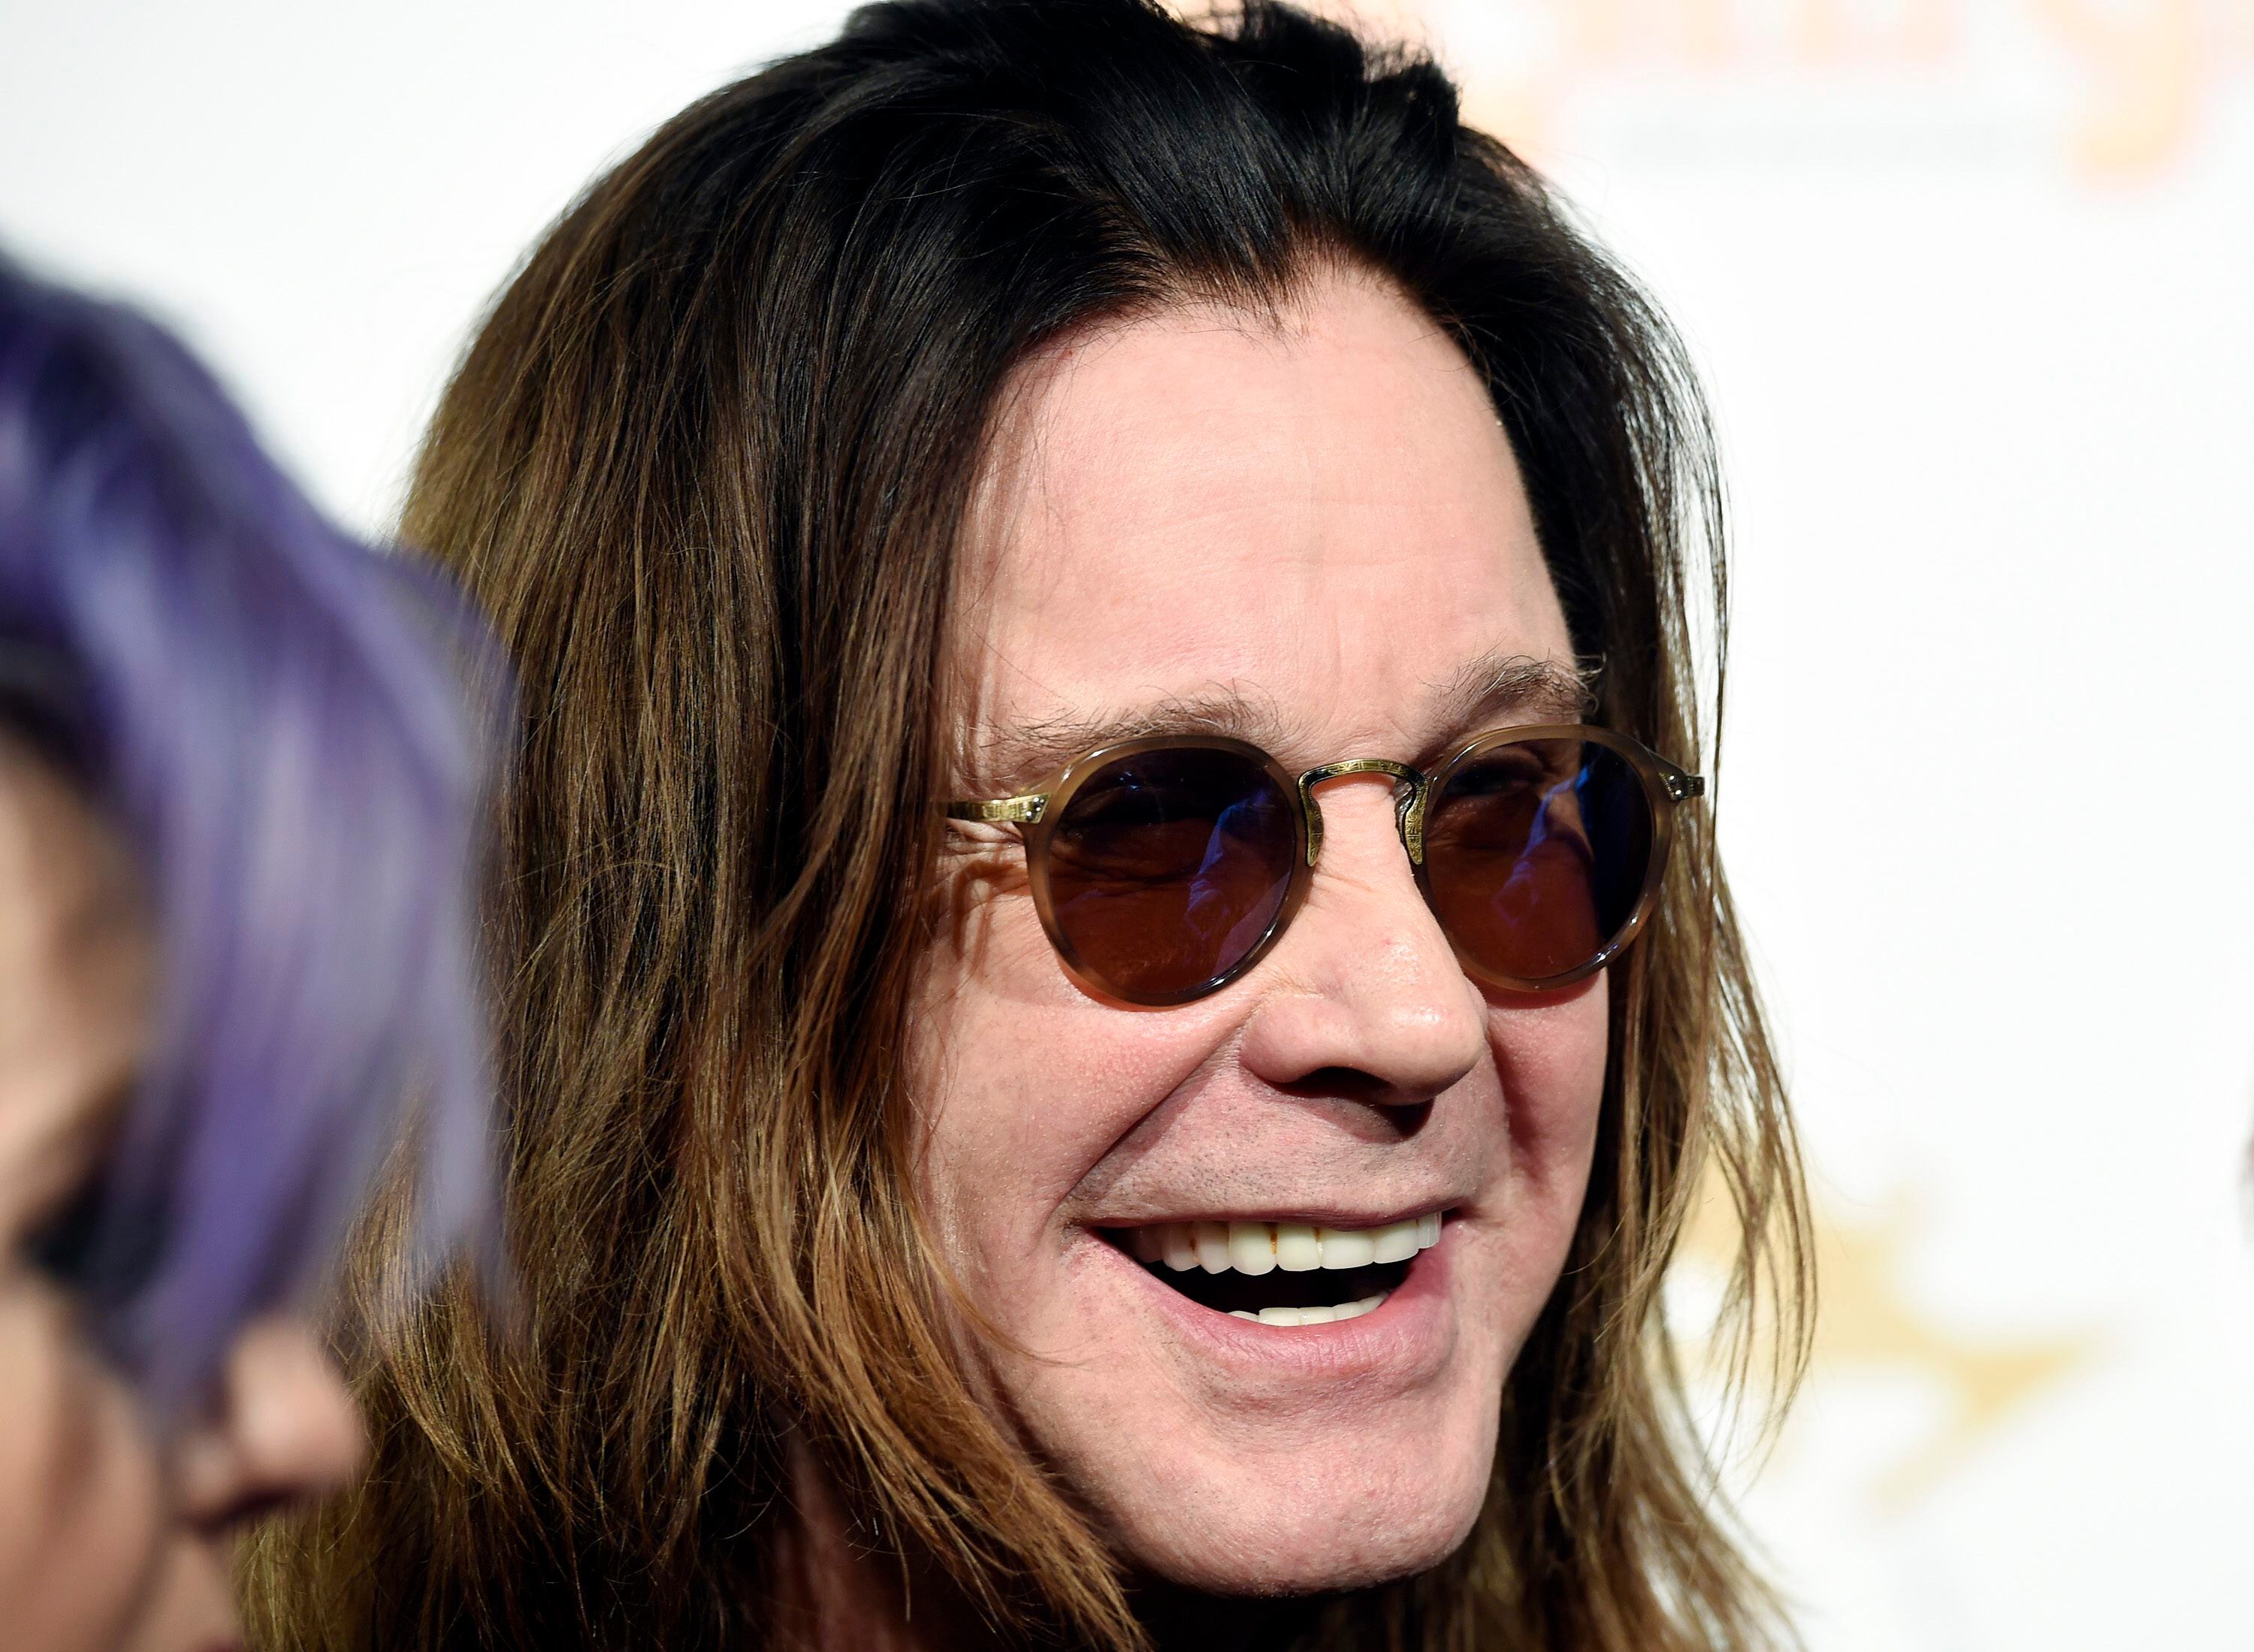 Ozzy Osbourne anuncia 'última turnê' da carreira e revela datas no